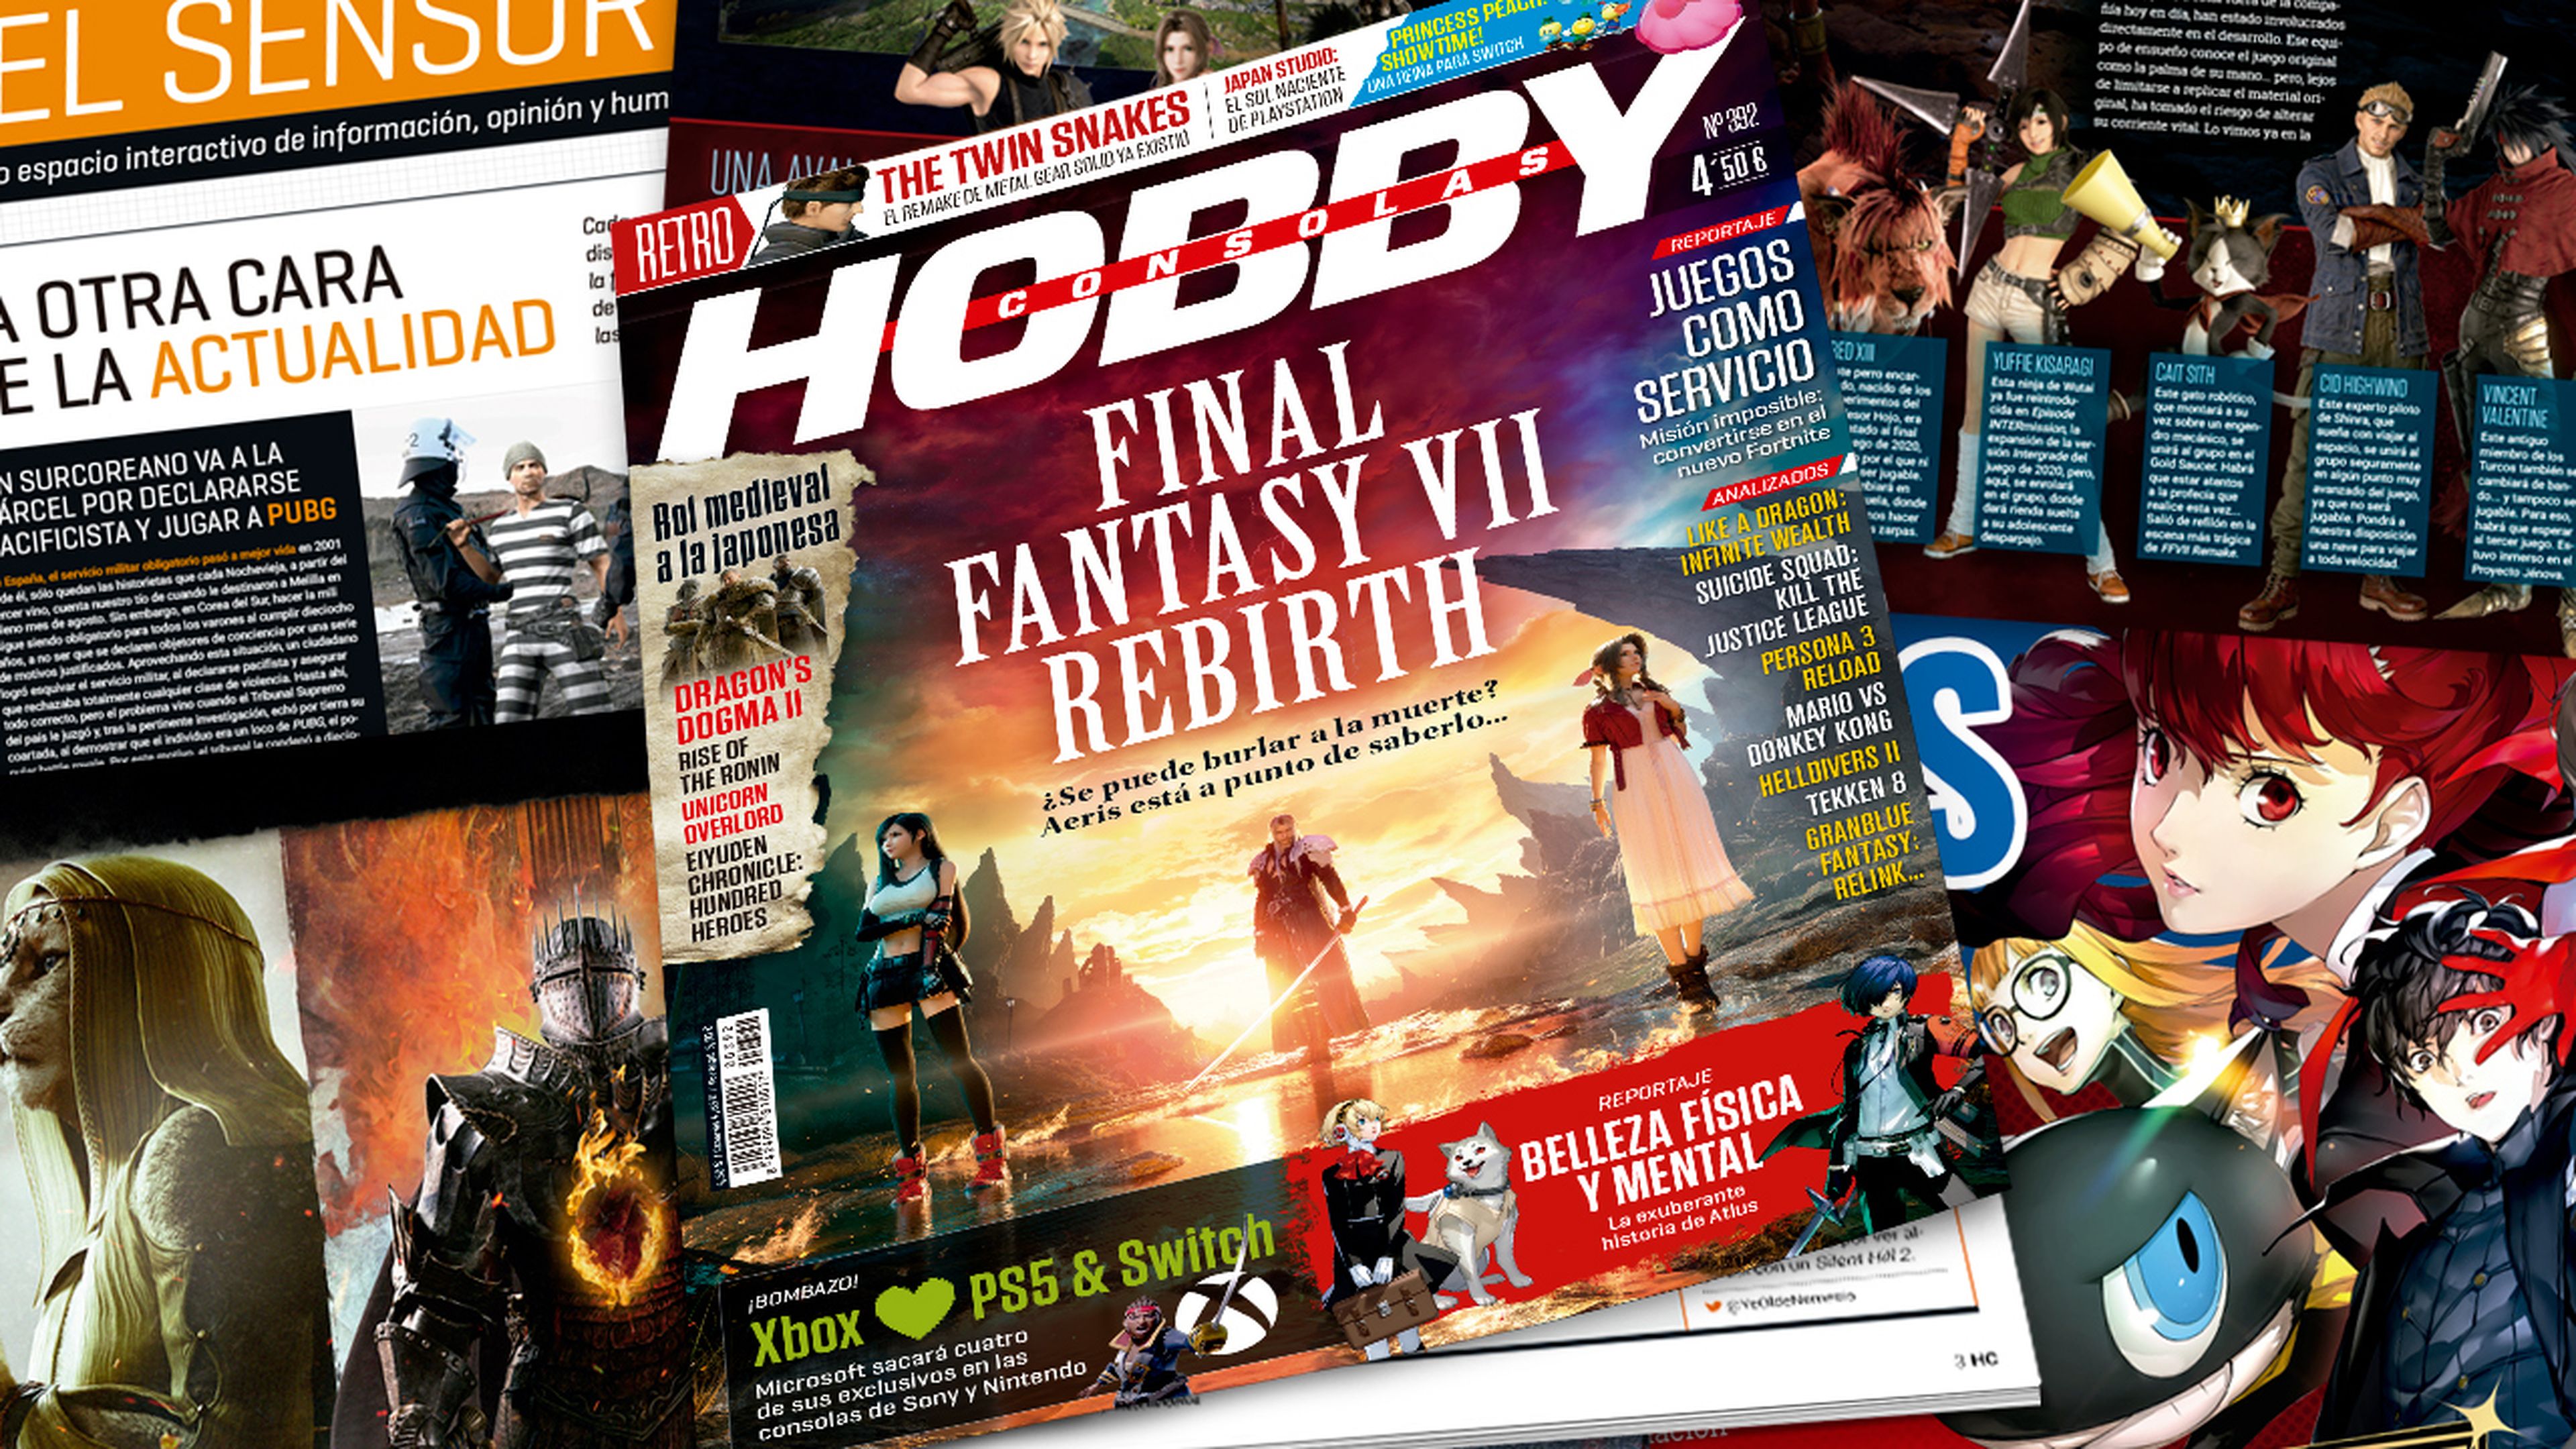 Hobby Consolas 392, ya a la venta con Final Fantasy VII Rebirth en portada